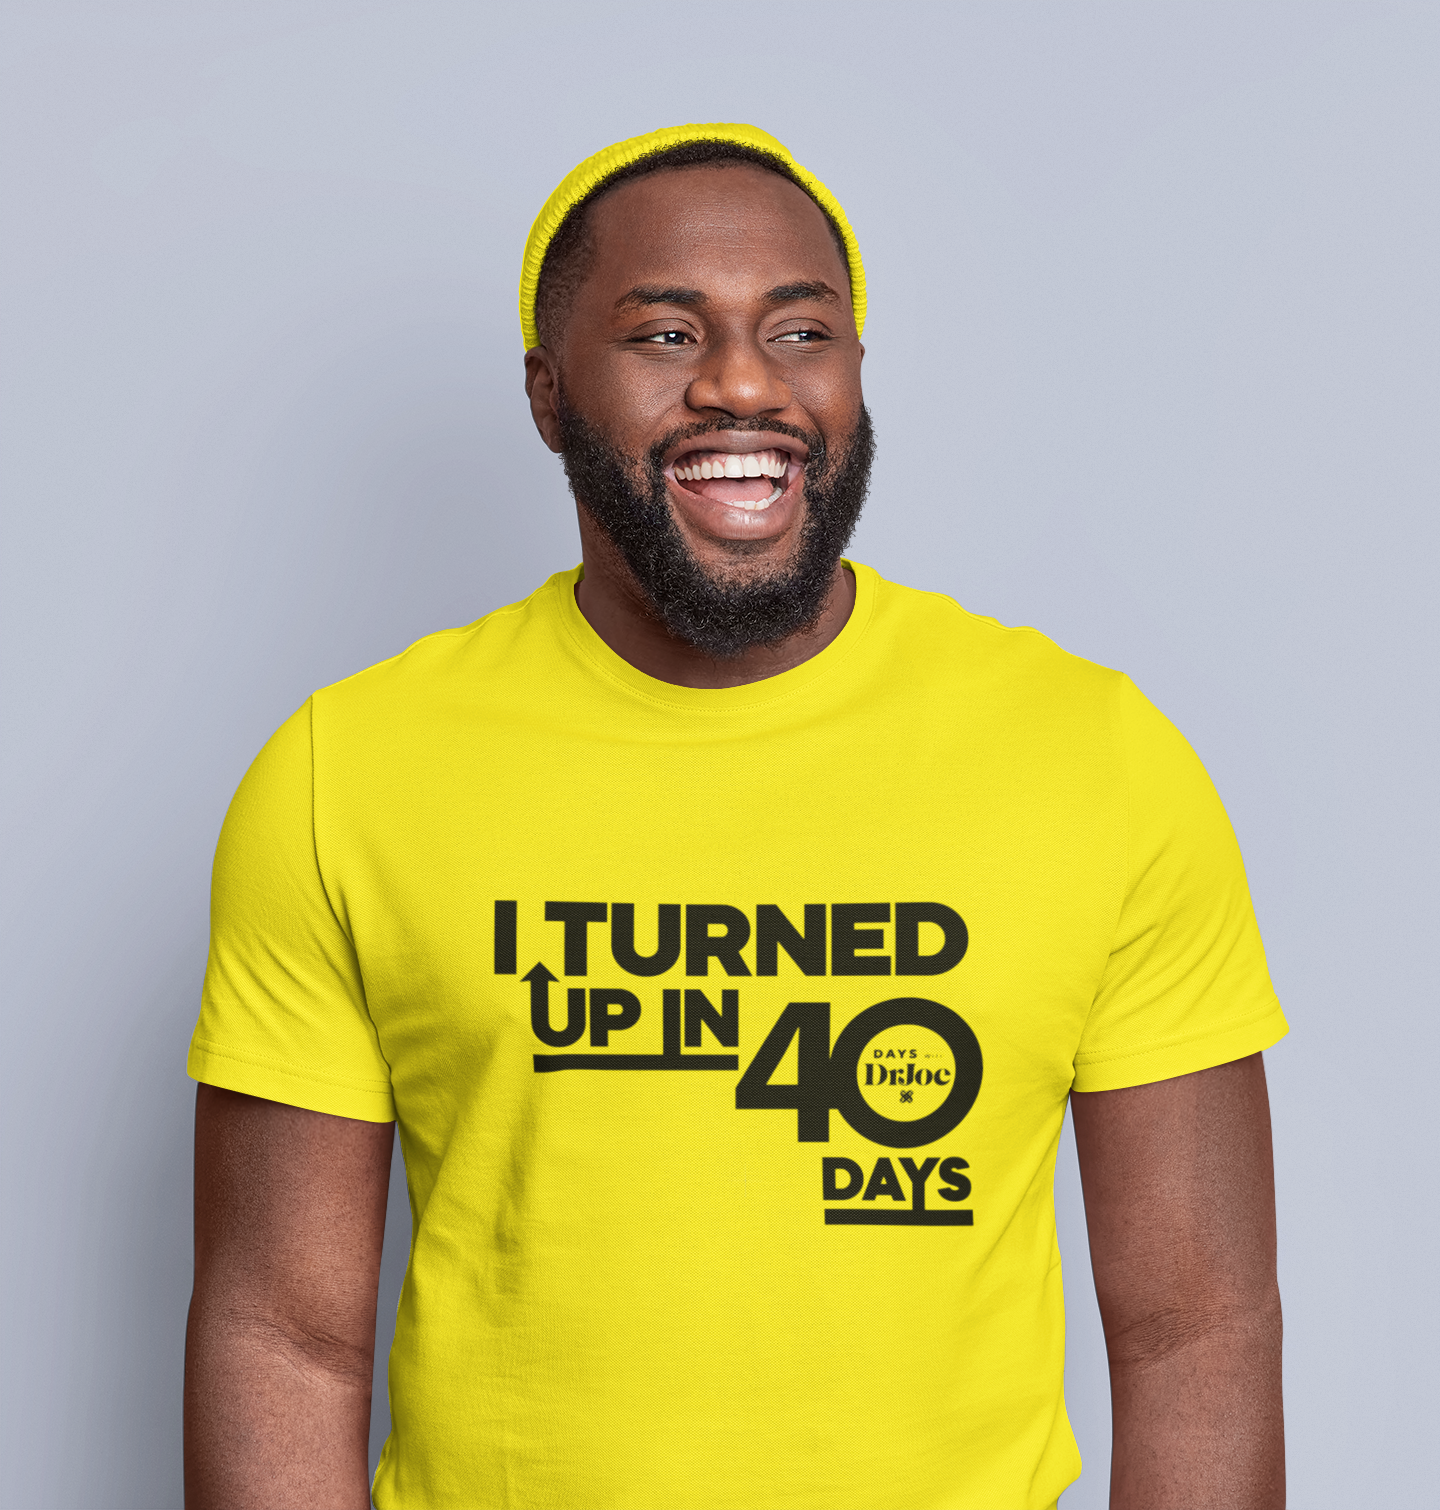 Turn Up Yellow Tshirt